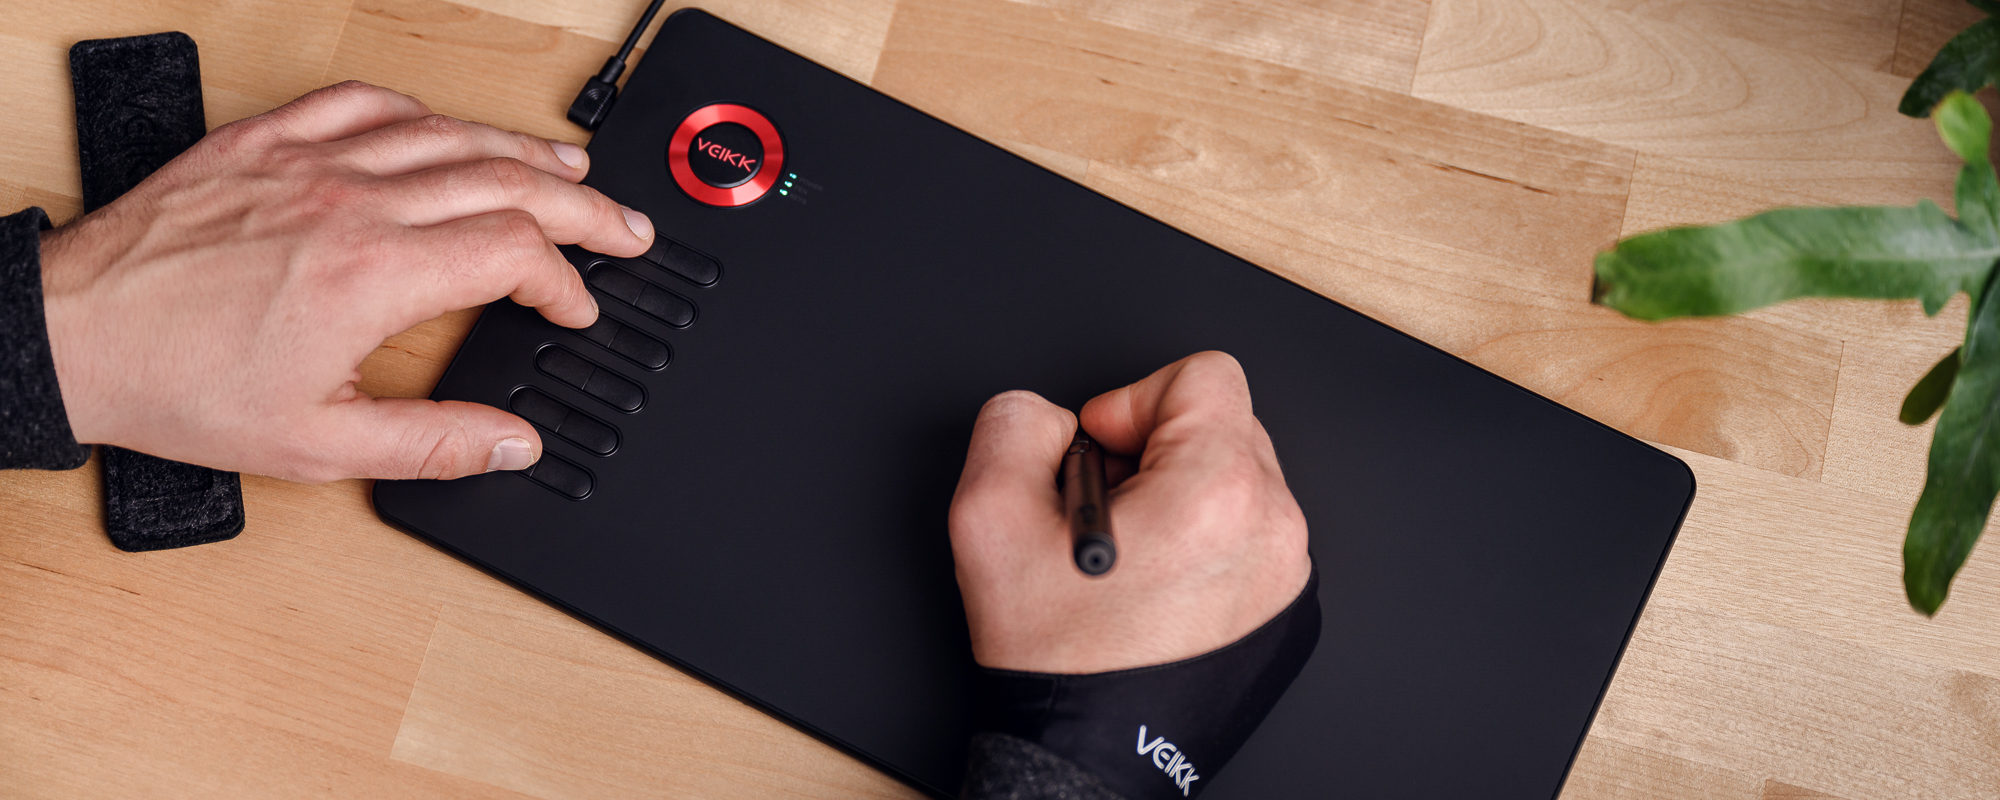 Zdjęcie - tablet graficzny Veikk A15 na jasnobrązowym biurku, lewa dłoń mężczyzny naciska klawisz funkcyjny, prawa obsługuje piórko